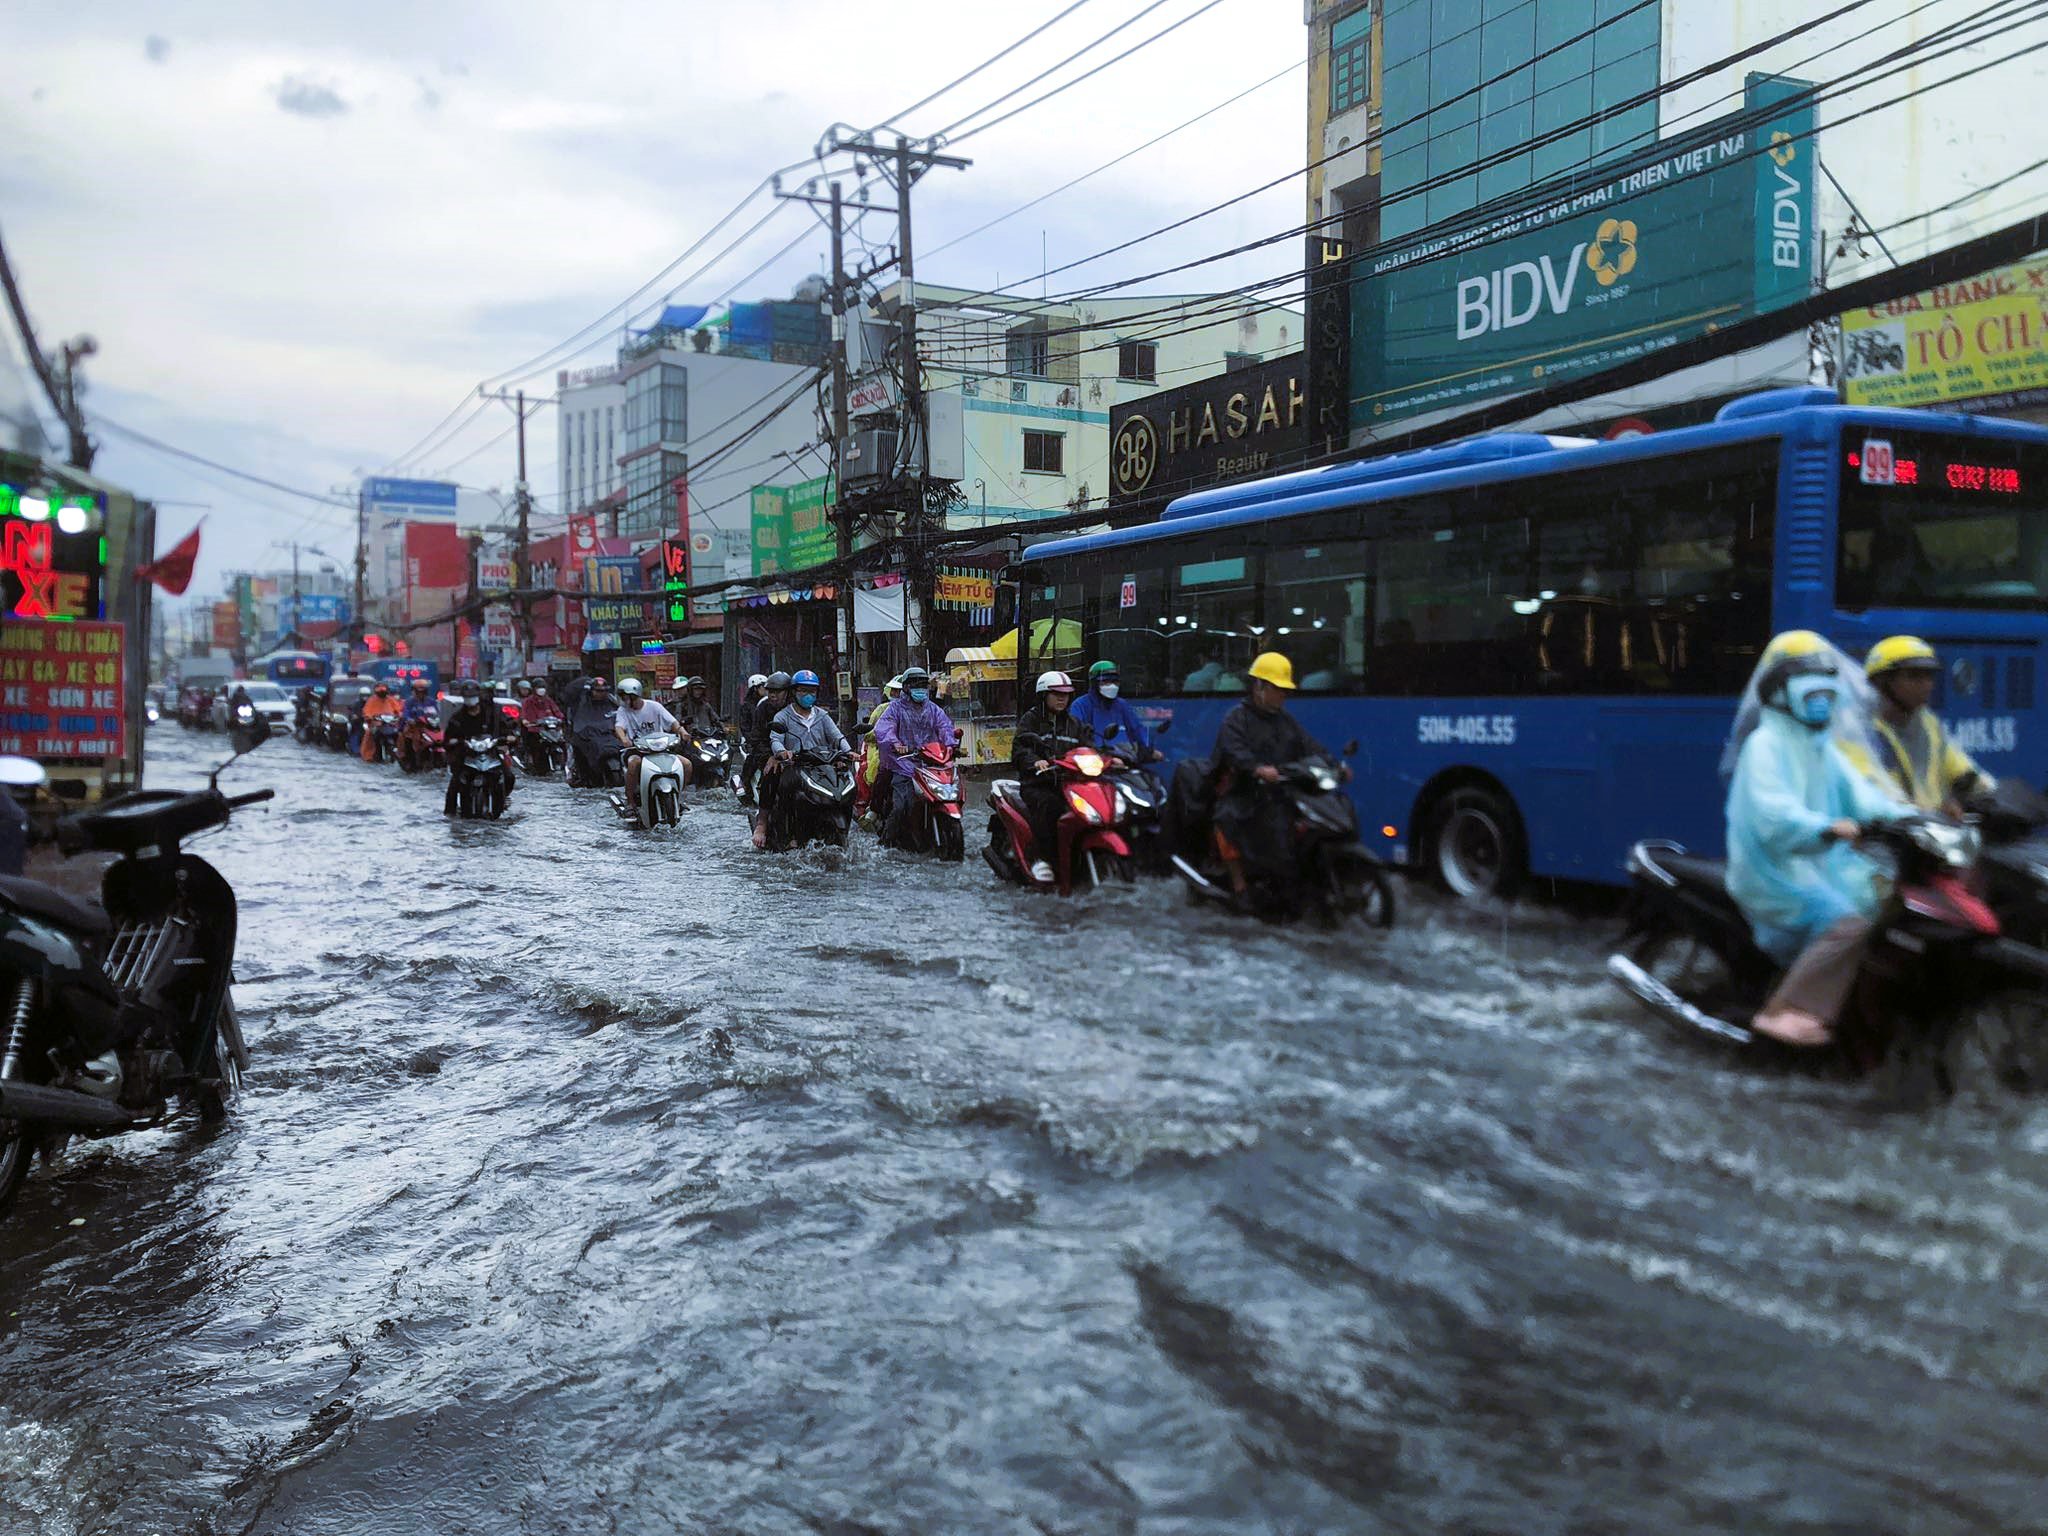 Các tuyến đường ở TP Thủ Đức như: Nguyển Xiển, Lã Xuân Oai, Lê Văn Việt… bị ngập nặng. Nhiều đoạn nước ngập hơn 0,3m kéo dài khiến nhiều phương tiện bị chết máy